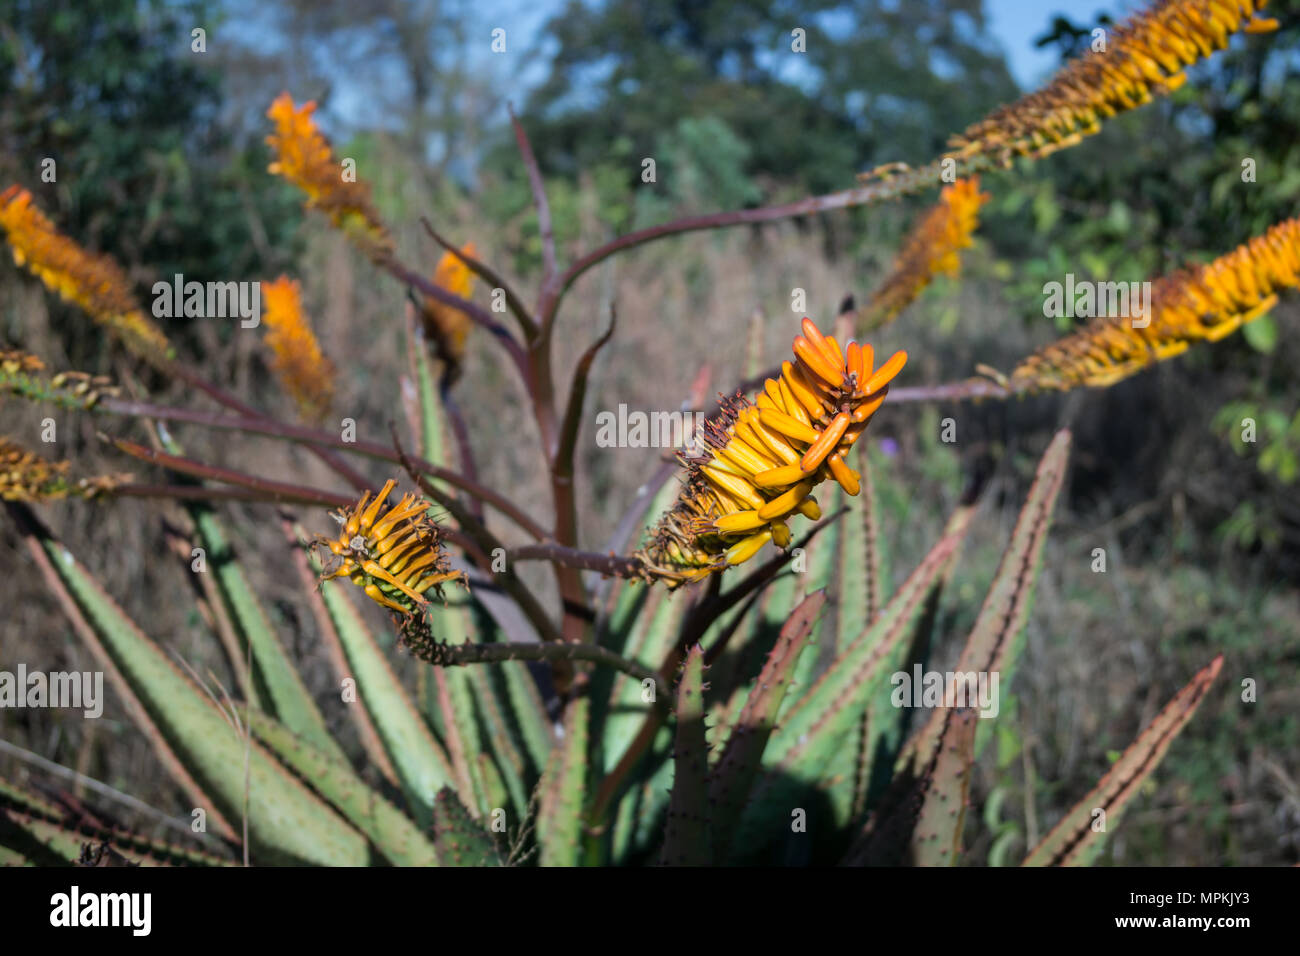 Wild, matura Aloe Vera pianta (aloe barbadensis) con infiorescenza cascante, arancio fiori tubolari e stame visibile nella boccola dello Swaziland, Africa Foto Stock